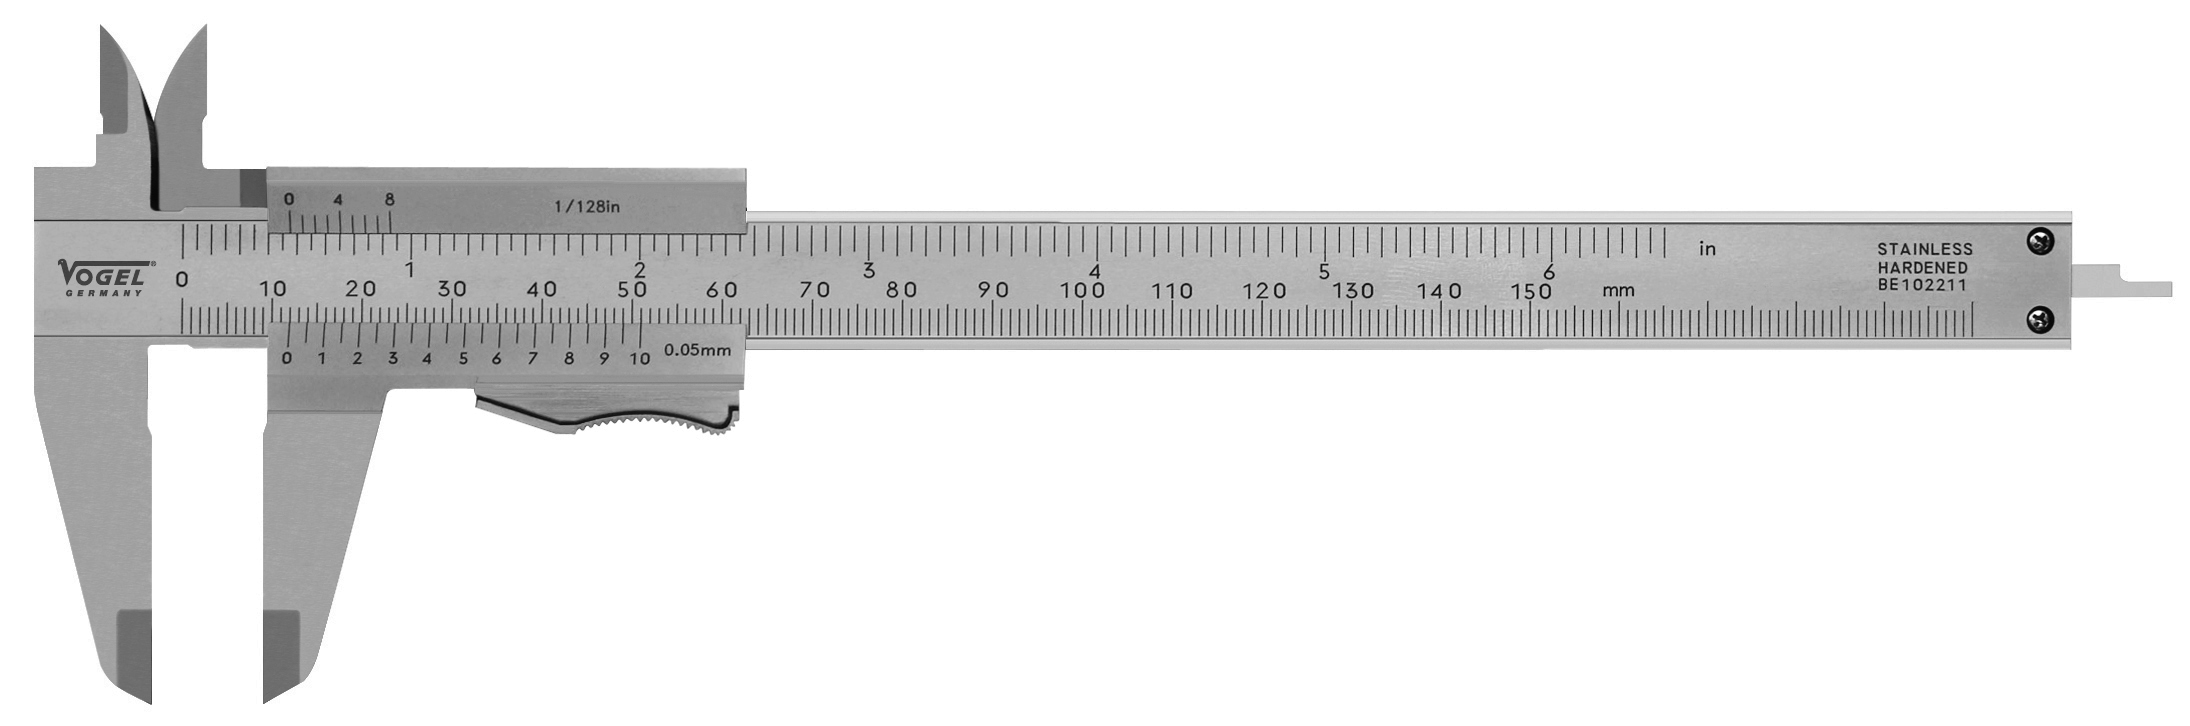 Vogel Germany - Taschen-Messschieber DIN 862, mit Feststellschraube, 150 mm  / 6 inch